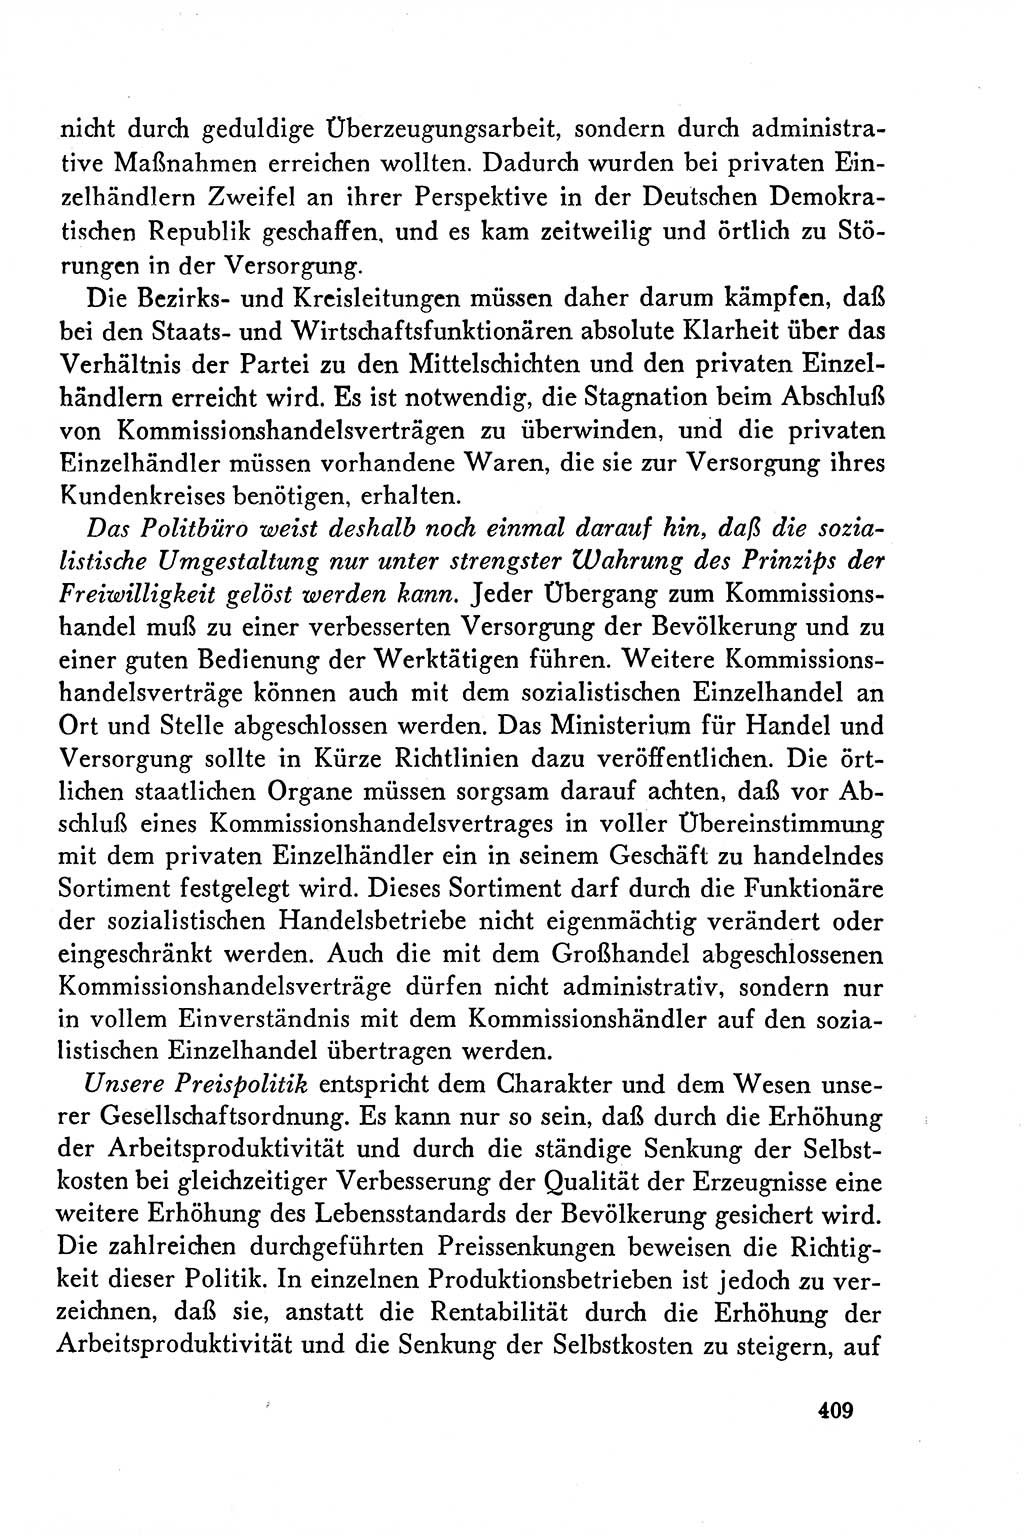 Dokumente der Sozialistischen Einheitspartei Deutschlands (SED) [Deutsche Demokratische Republik (DDR)] 1958-1959, Seite 409 (Dok. SED DDR 1958-1959, S. 409)